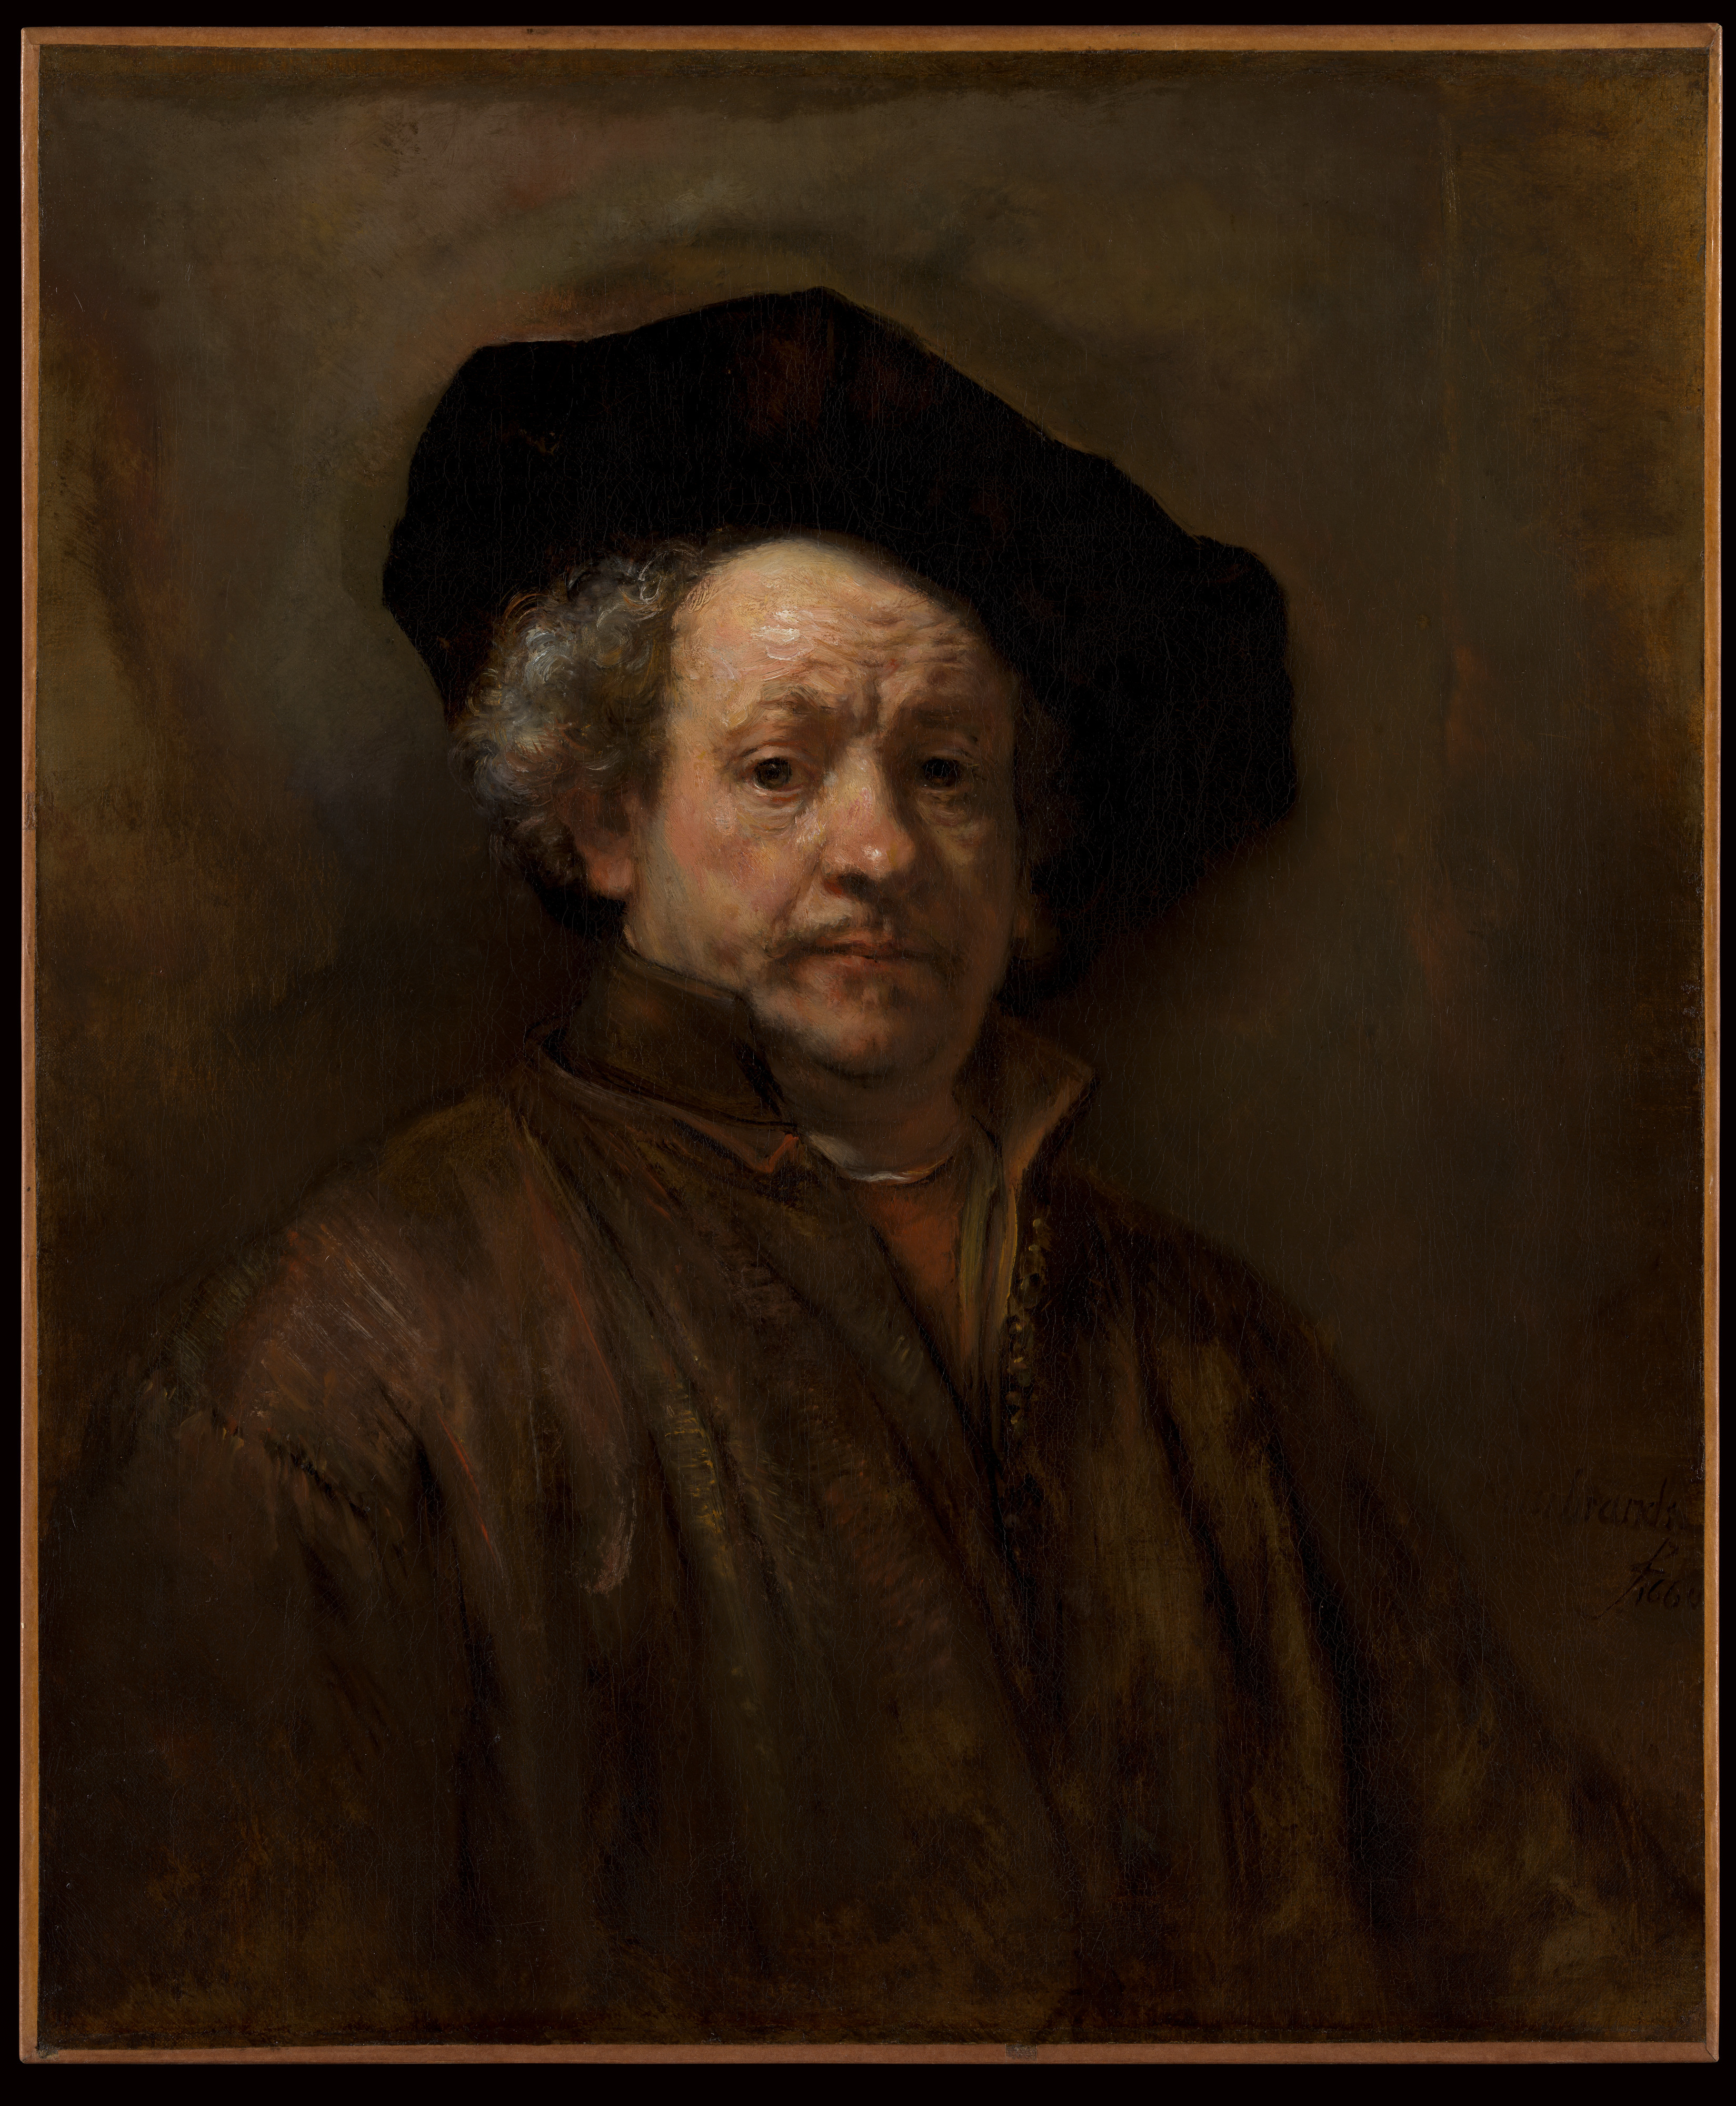 Autoportrét by Rembrandt van Rijn - 1660 - 31 5/8 x 26 1/2 palce 